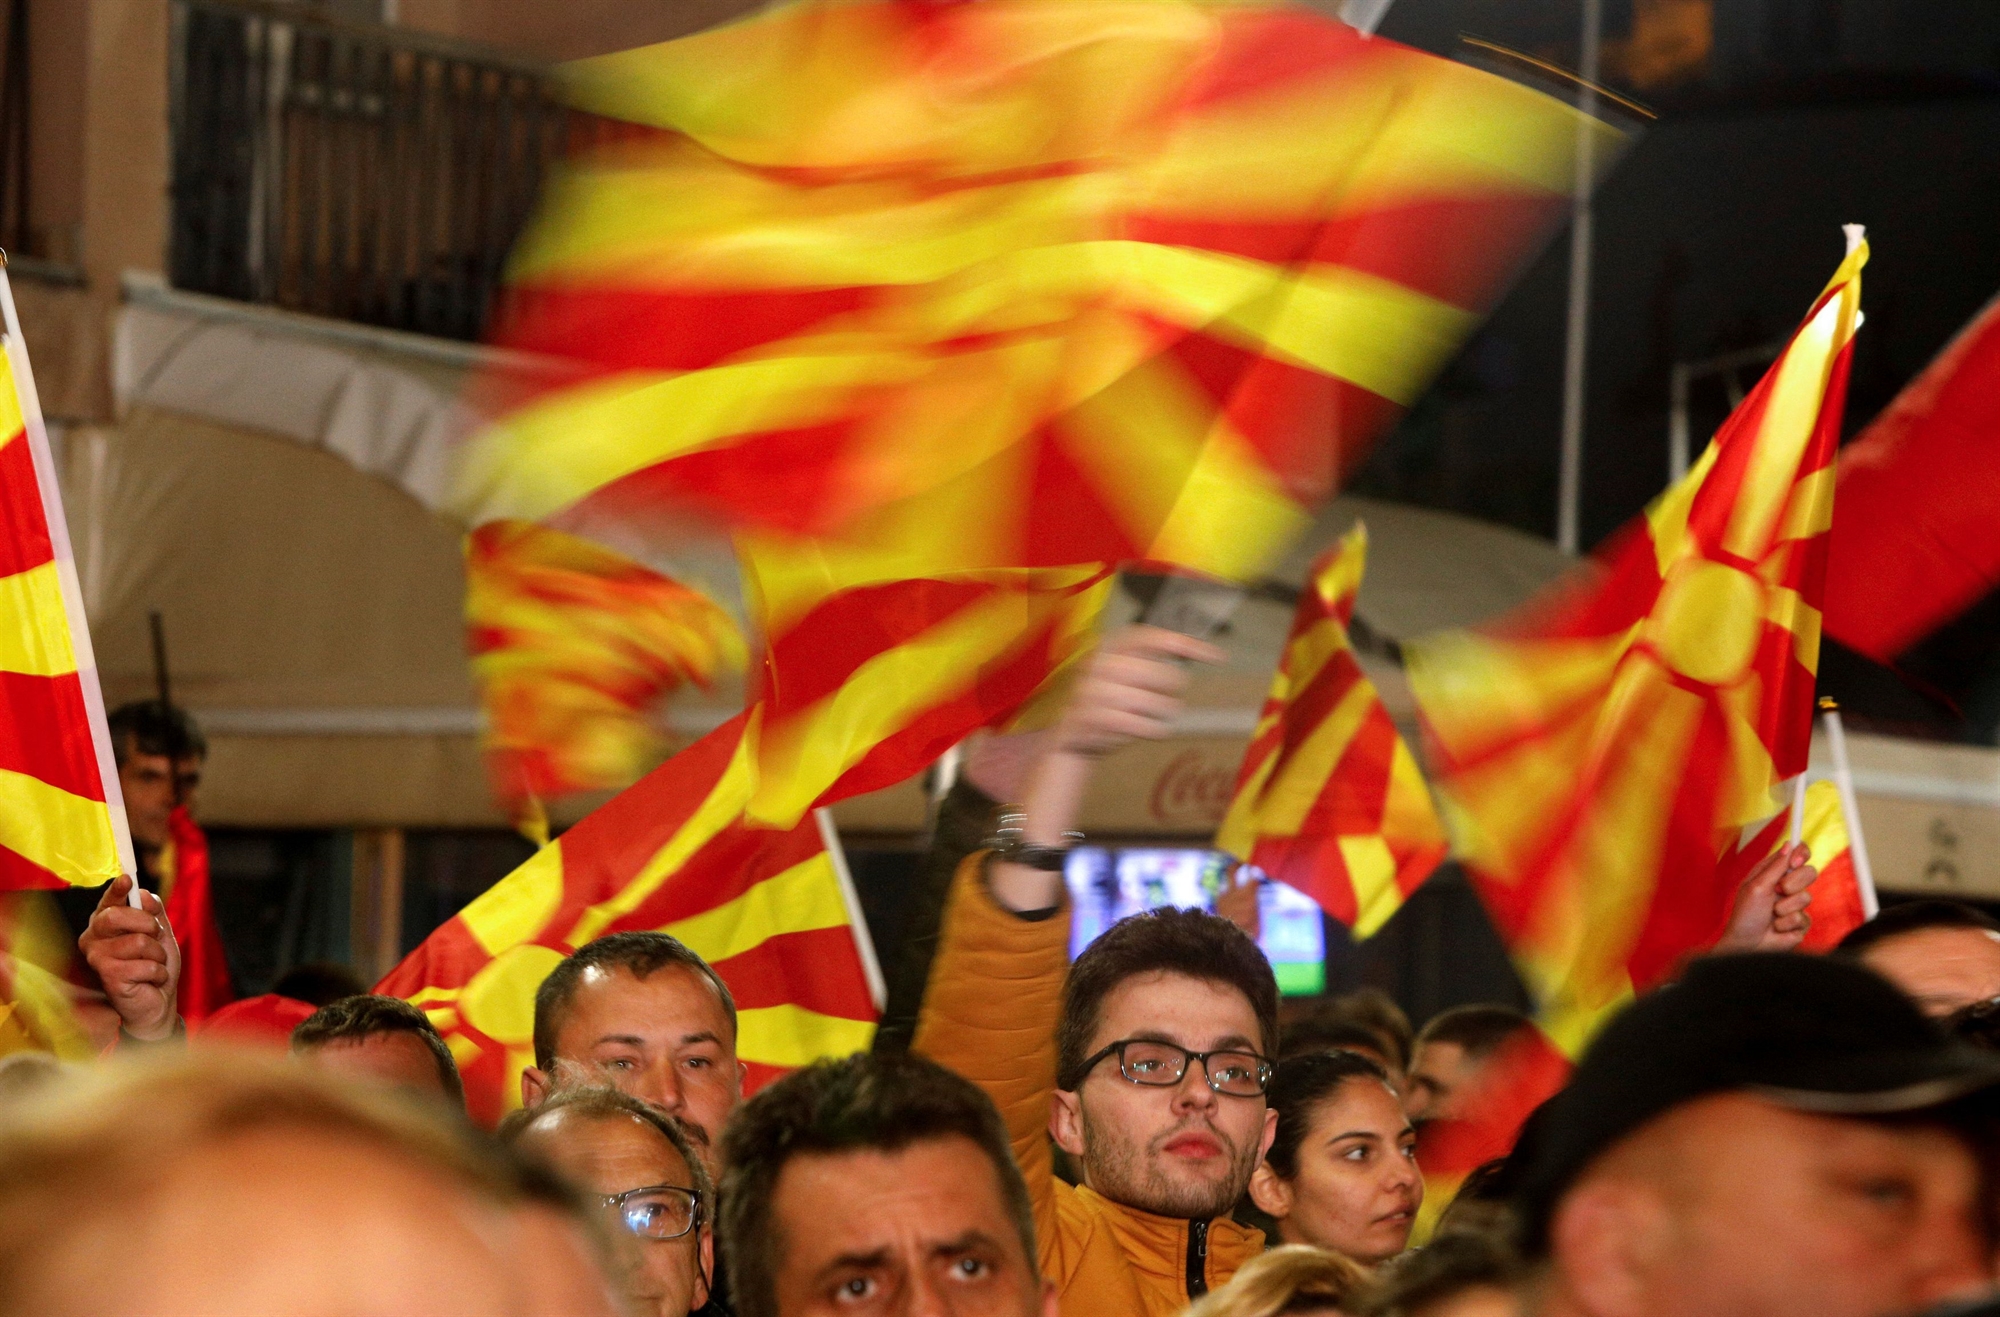 Διπλές κάλπες αύριο για τη Βόρεια Μακεδονία. Καλπάζει προς τη νίκη το δεξιό αντιπολιτευόμενο κόμμα VMRO